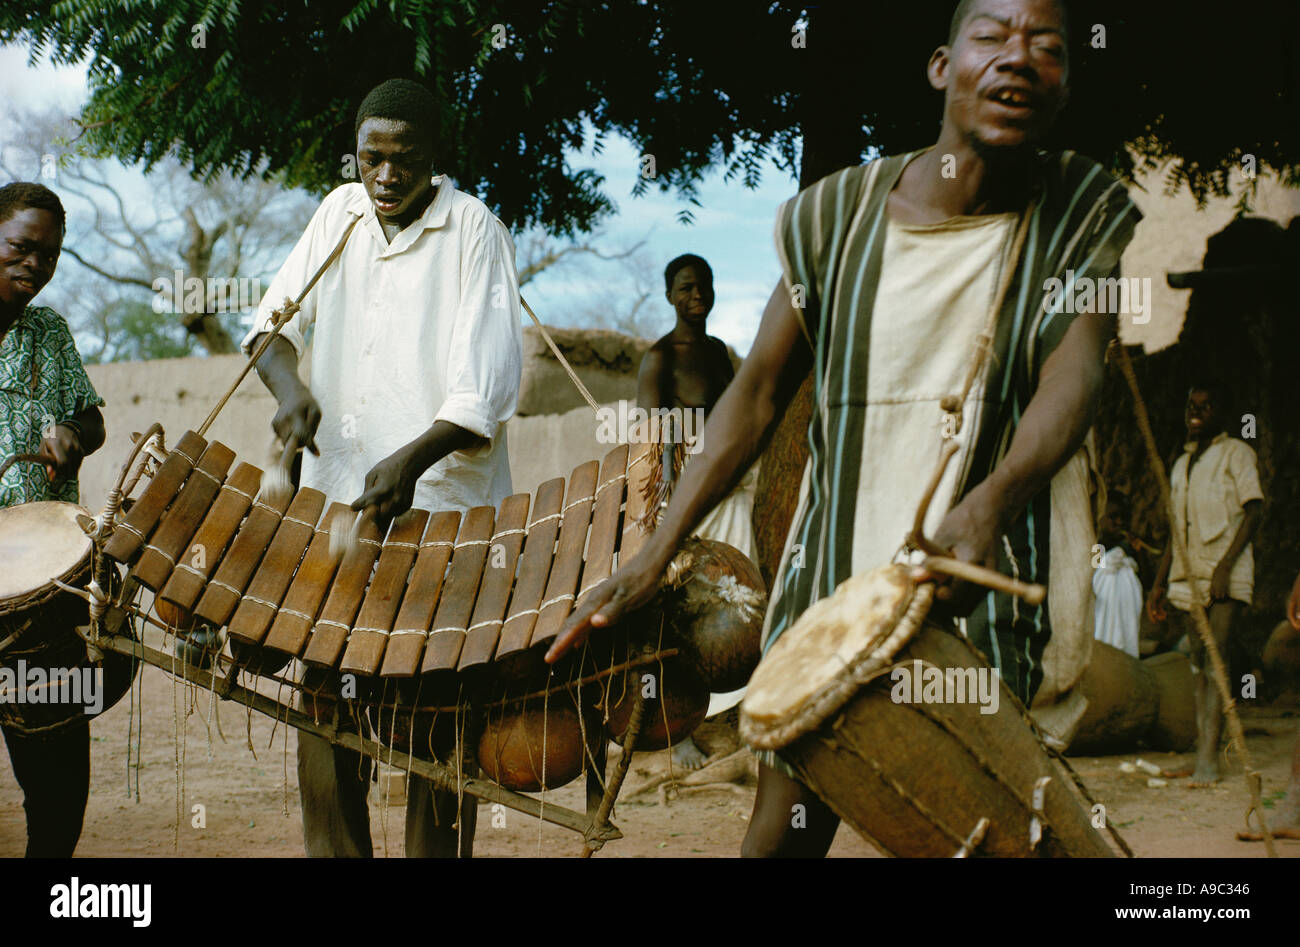 Musiker von Bobo Stamm spielt Schlagzeug und Balafon Xylophon in Koumbia Burkina Faso Afrika Stockfoto